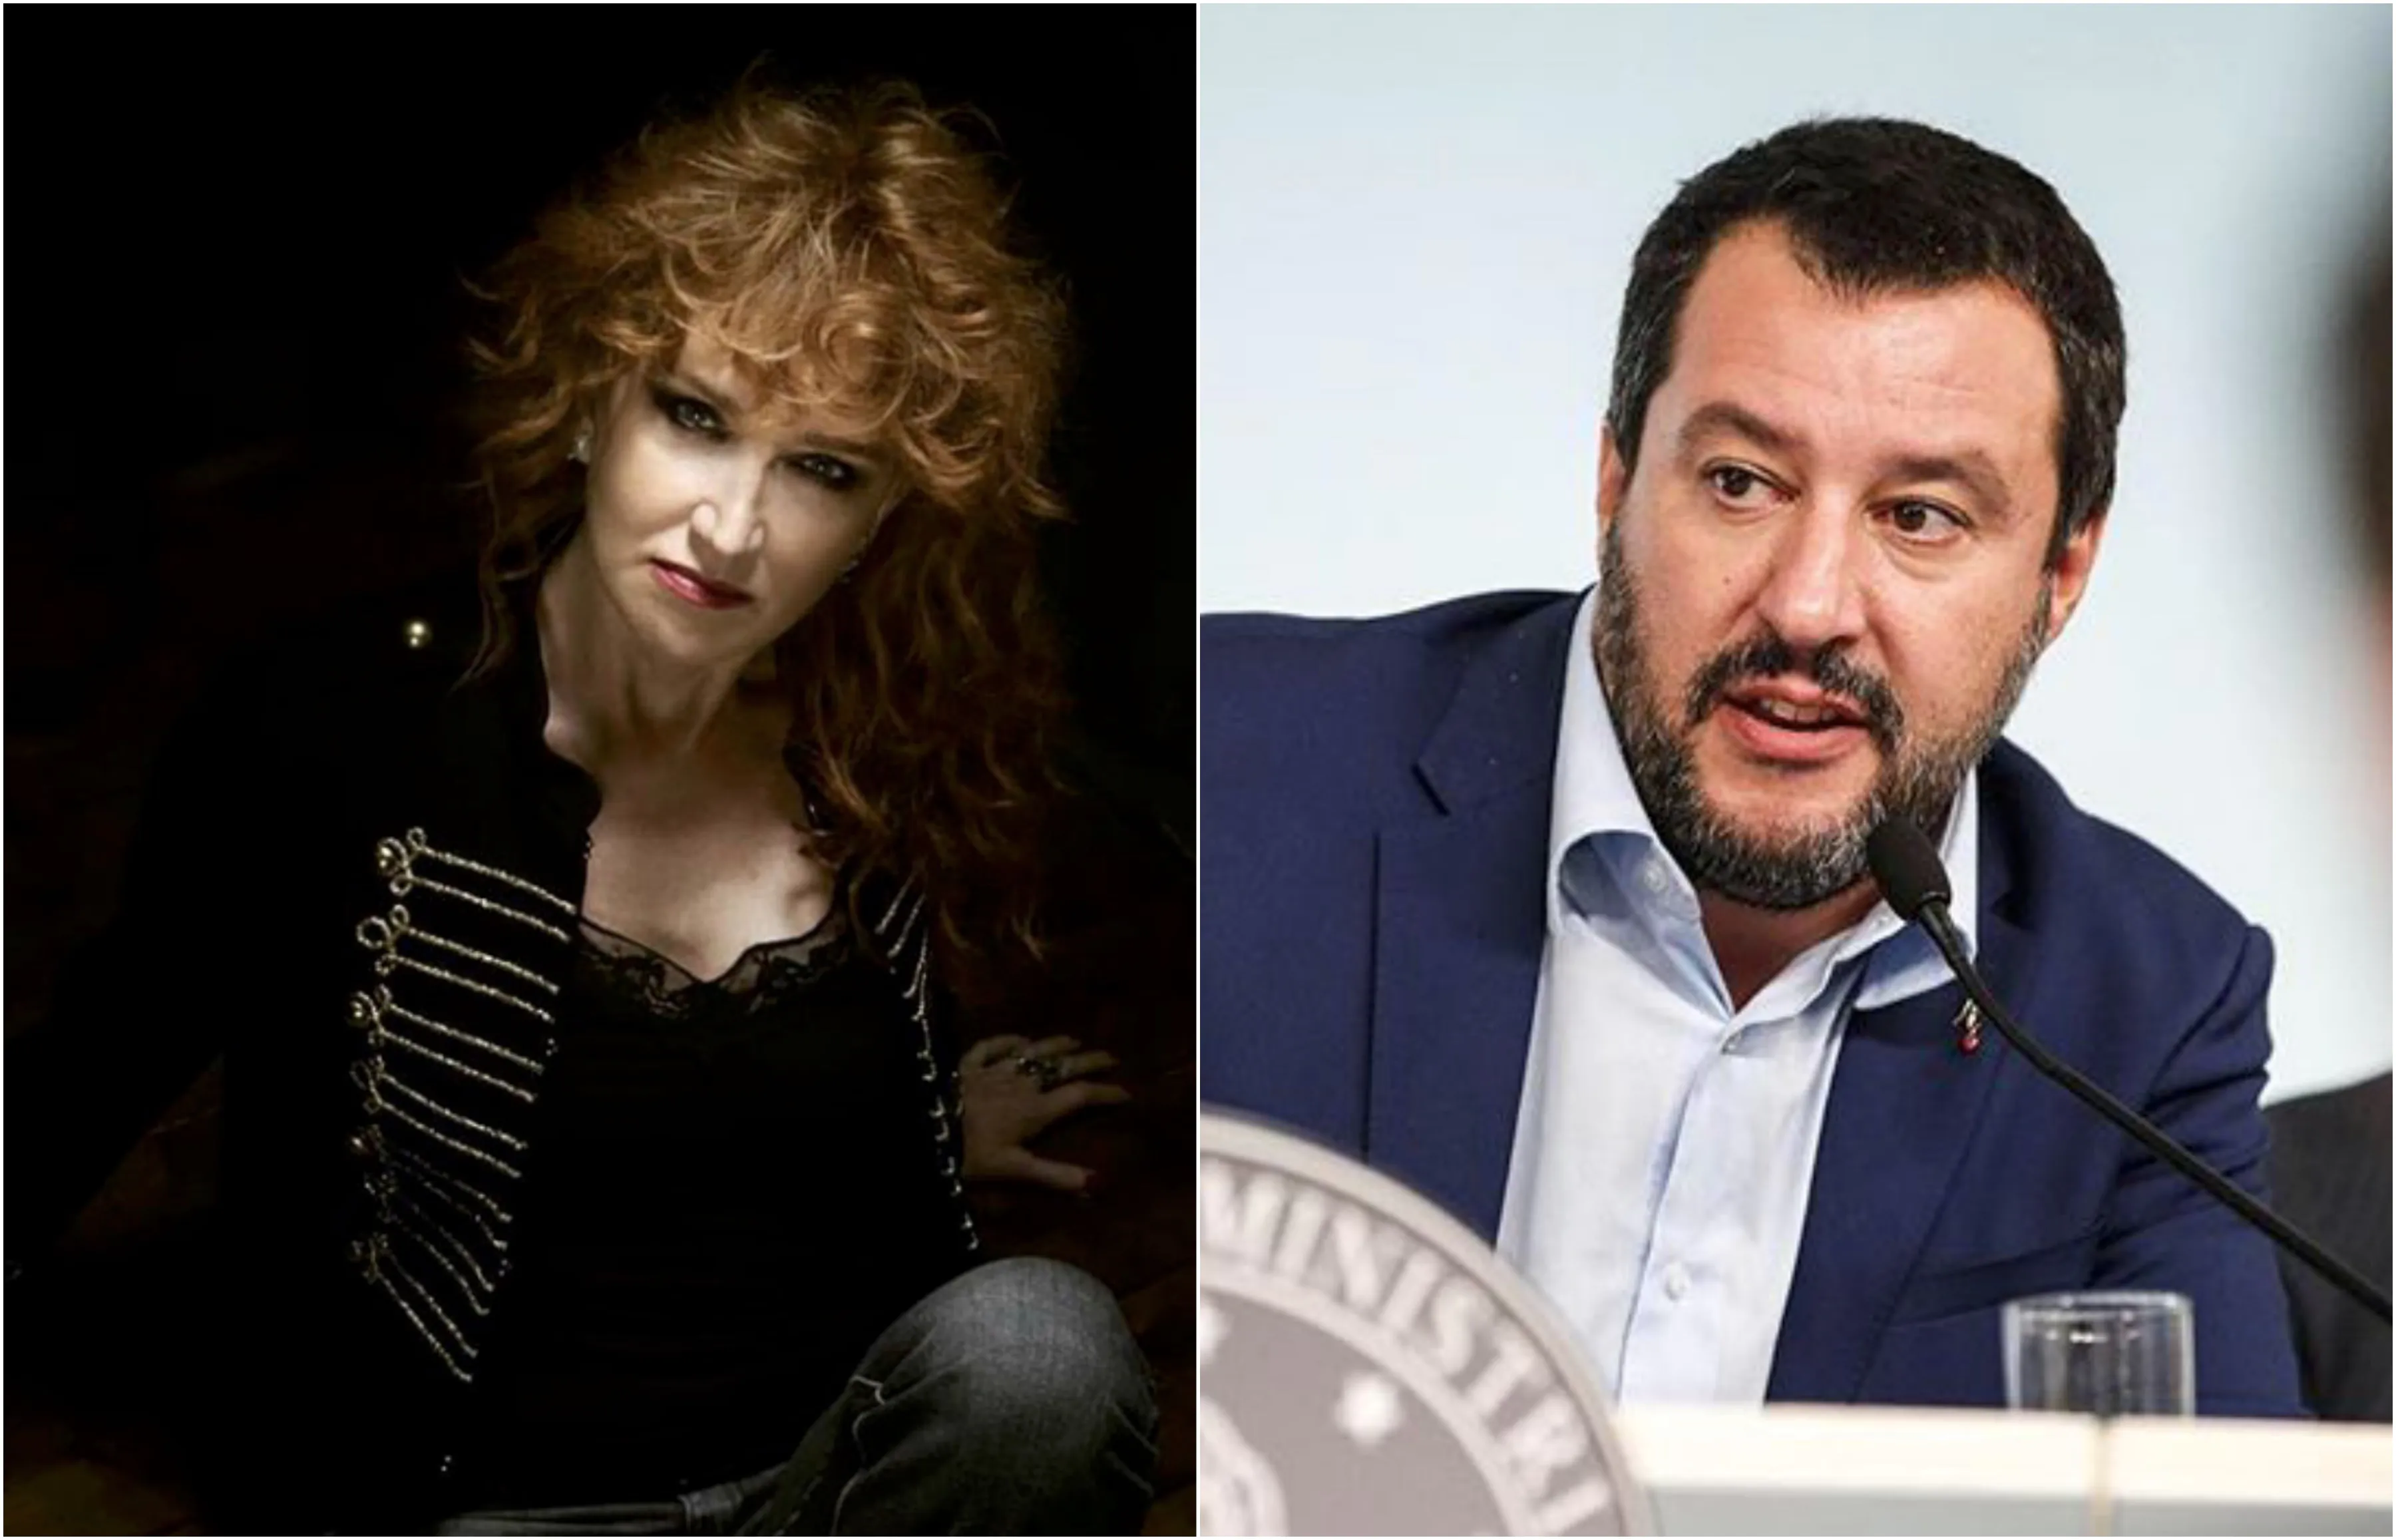 Mannoia contro Salvini sul caso Cucchi